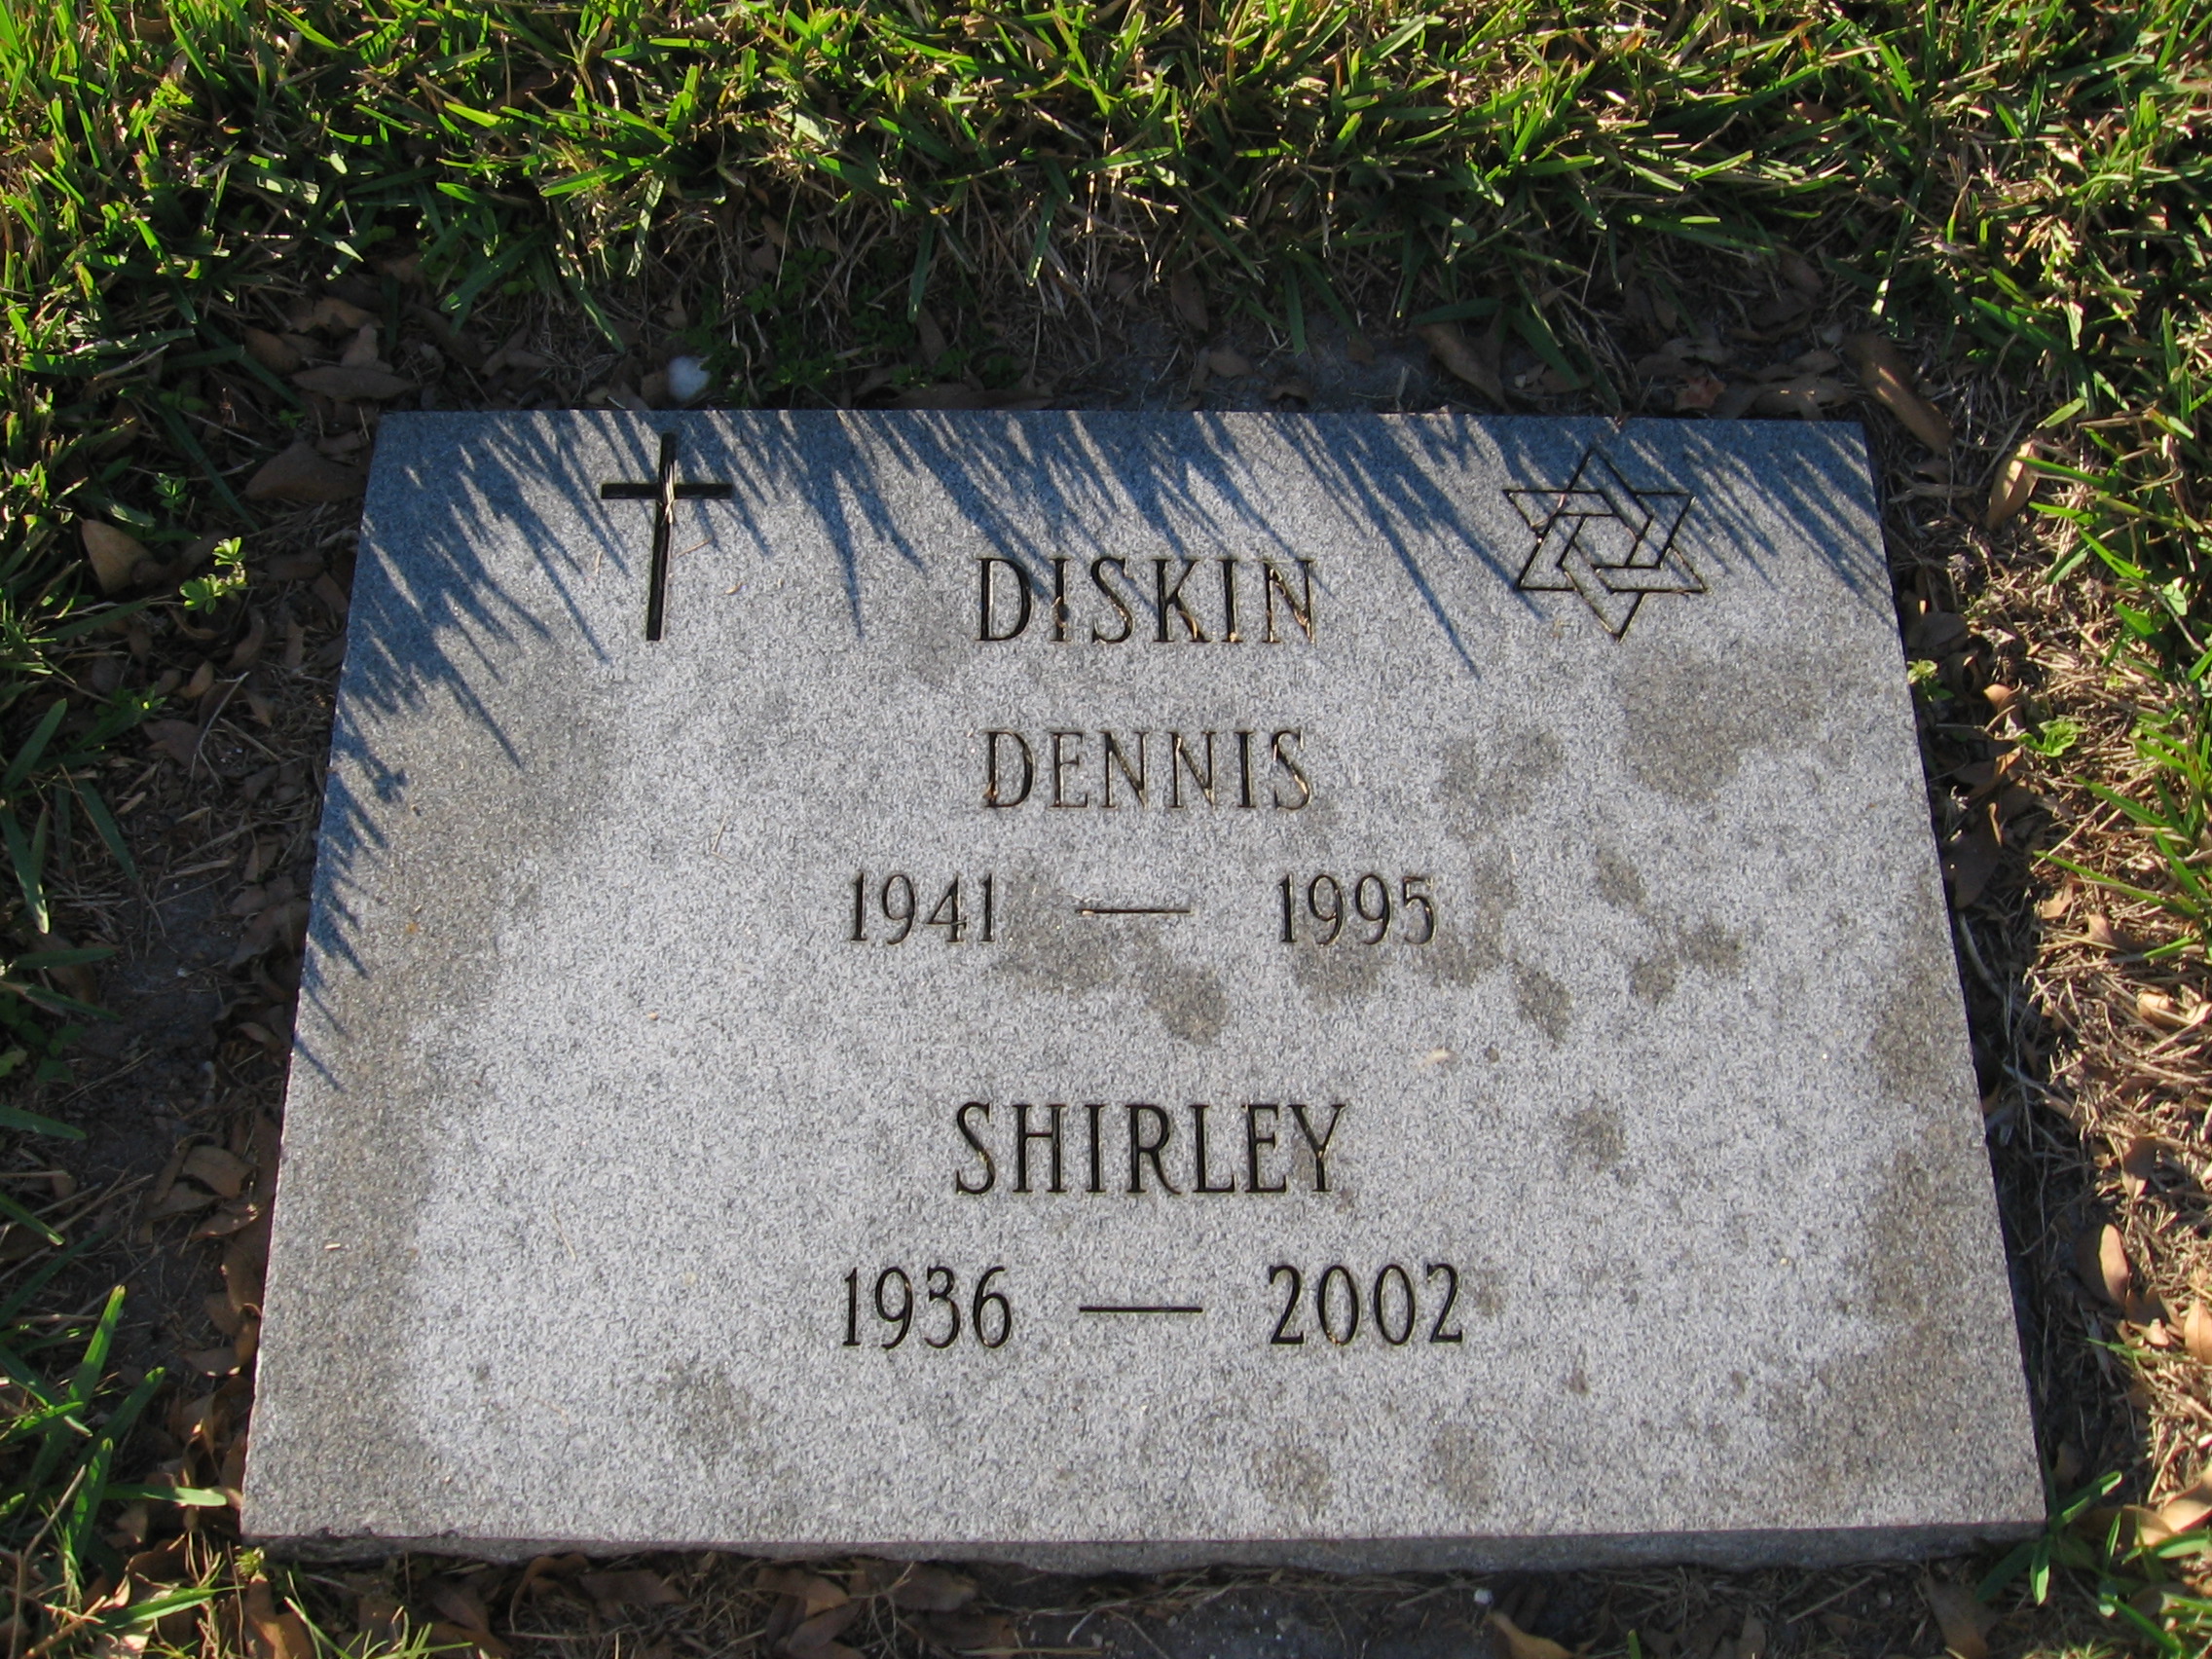 Dennis Diskin